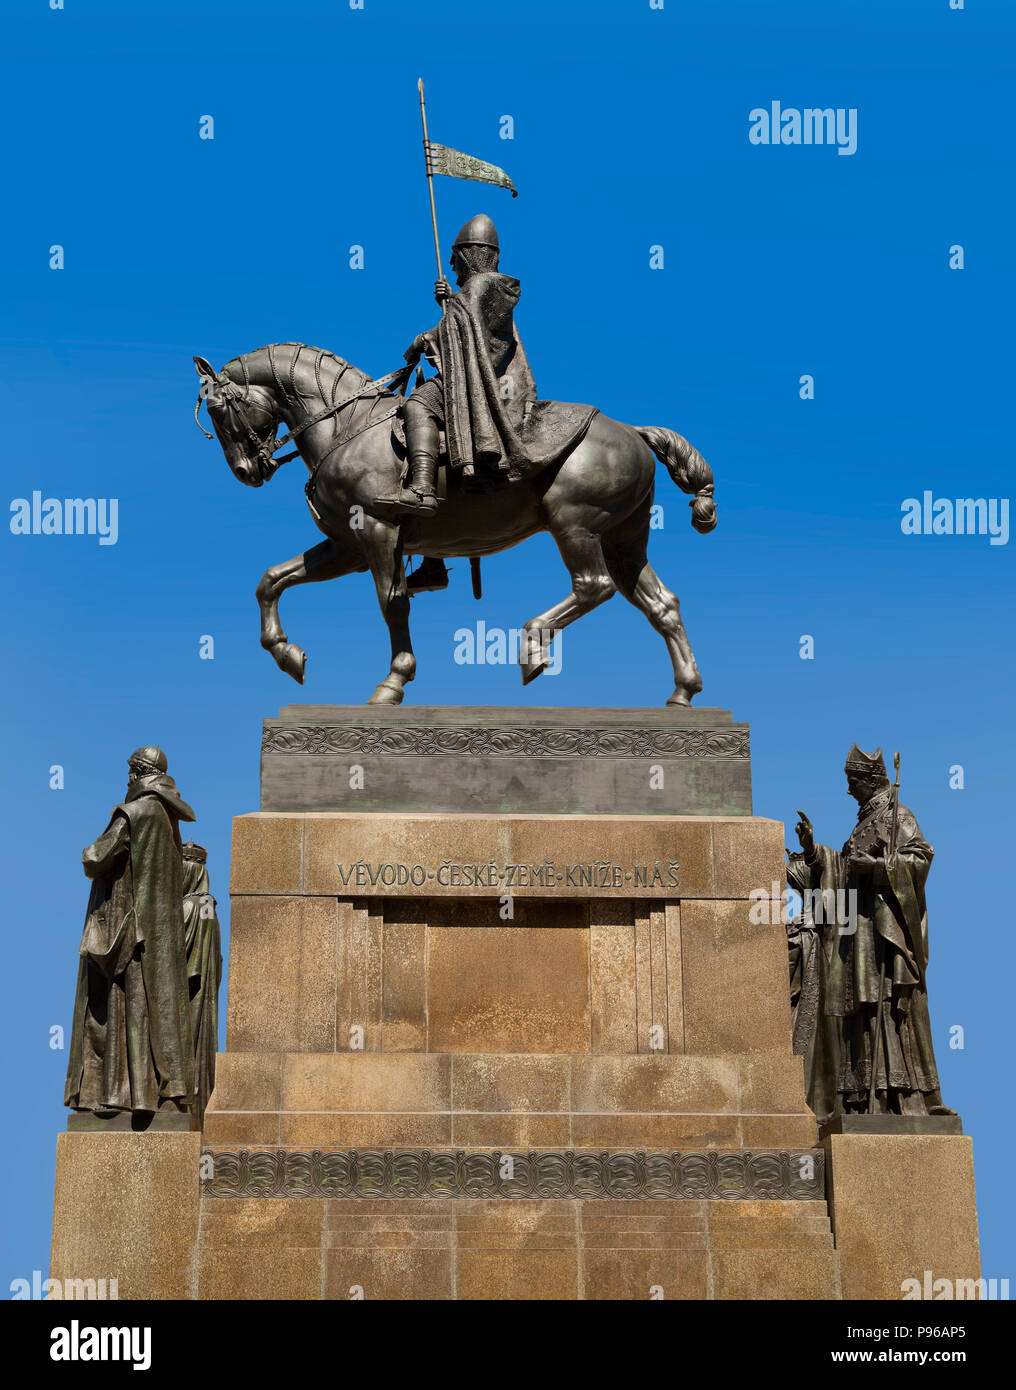 La statua equestre in bronzo di san Venceslao presso la Piazza Venceslao , Praga Repubblica Ceca, sole luminoso cielo blu Foto Stock